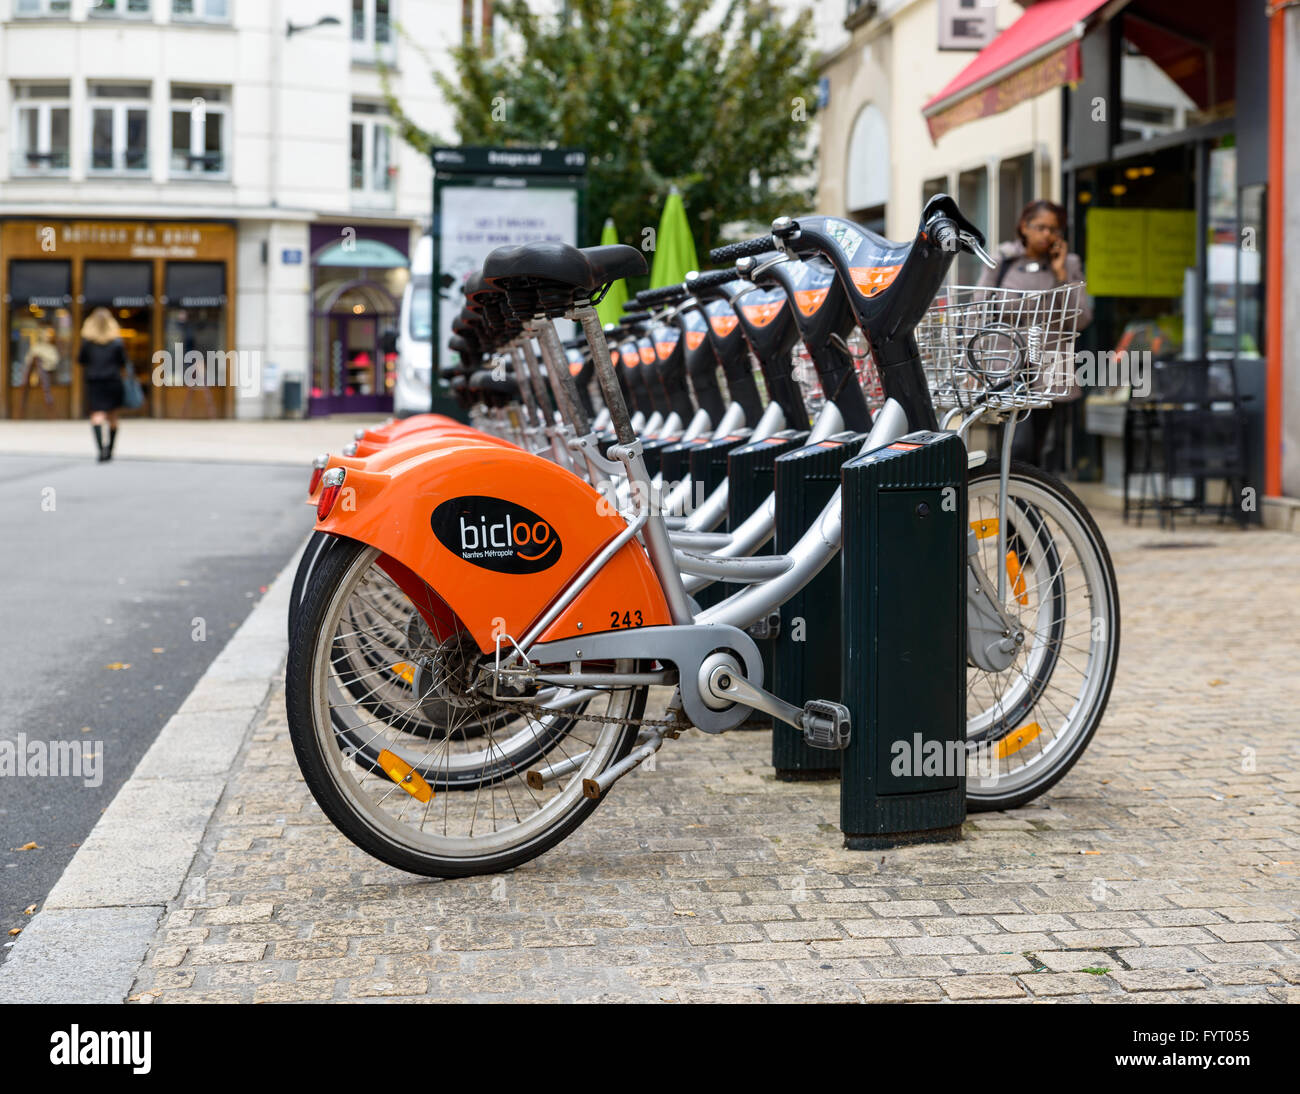 La station de Bicloo à Nantes, France. Bicloo Nantes est au système de partage de vélos. Banque D'Images